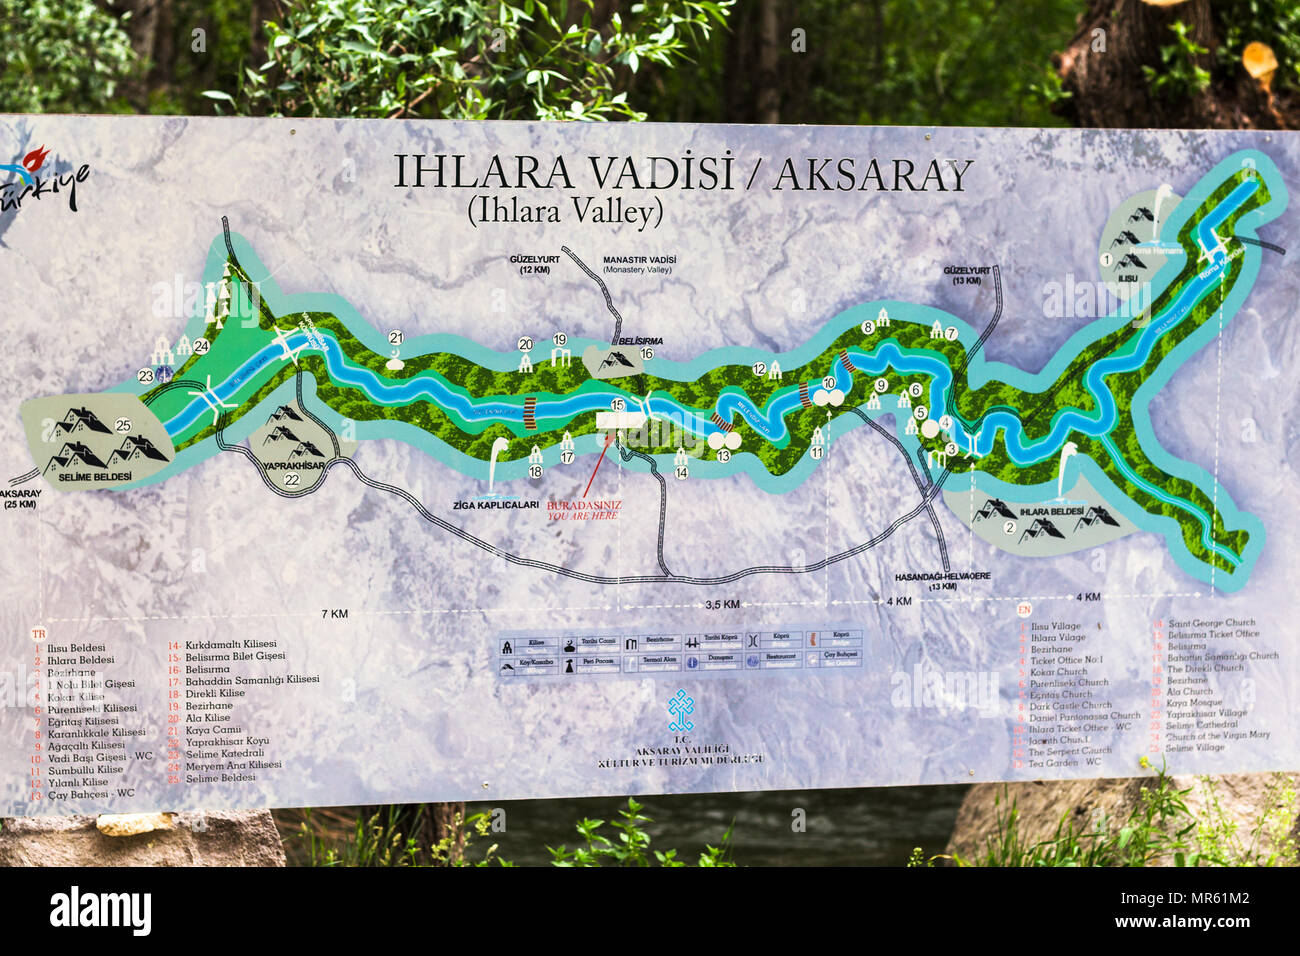 IHLARA VALLEY, Turchia - 6 Maggio 2018: outdoor mappa di Ihlara Valley in gola nella provincia di Aksaray. Ihlara Valley è lunga 16 km gorge è il più famo Foto Stock